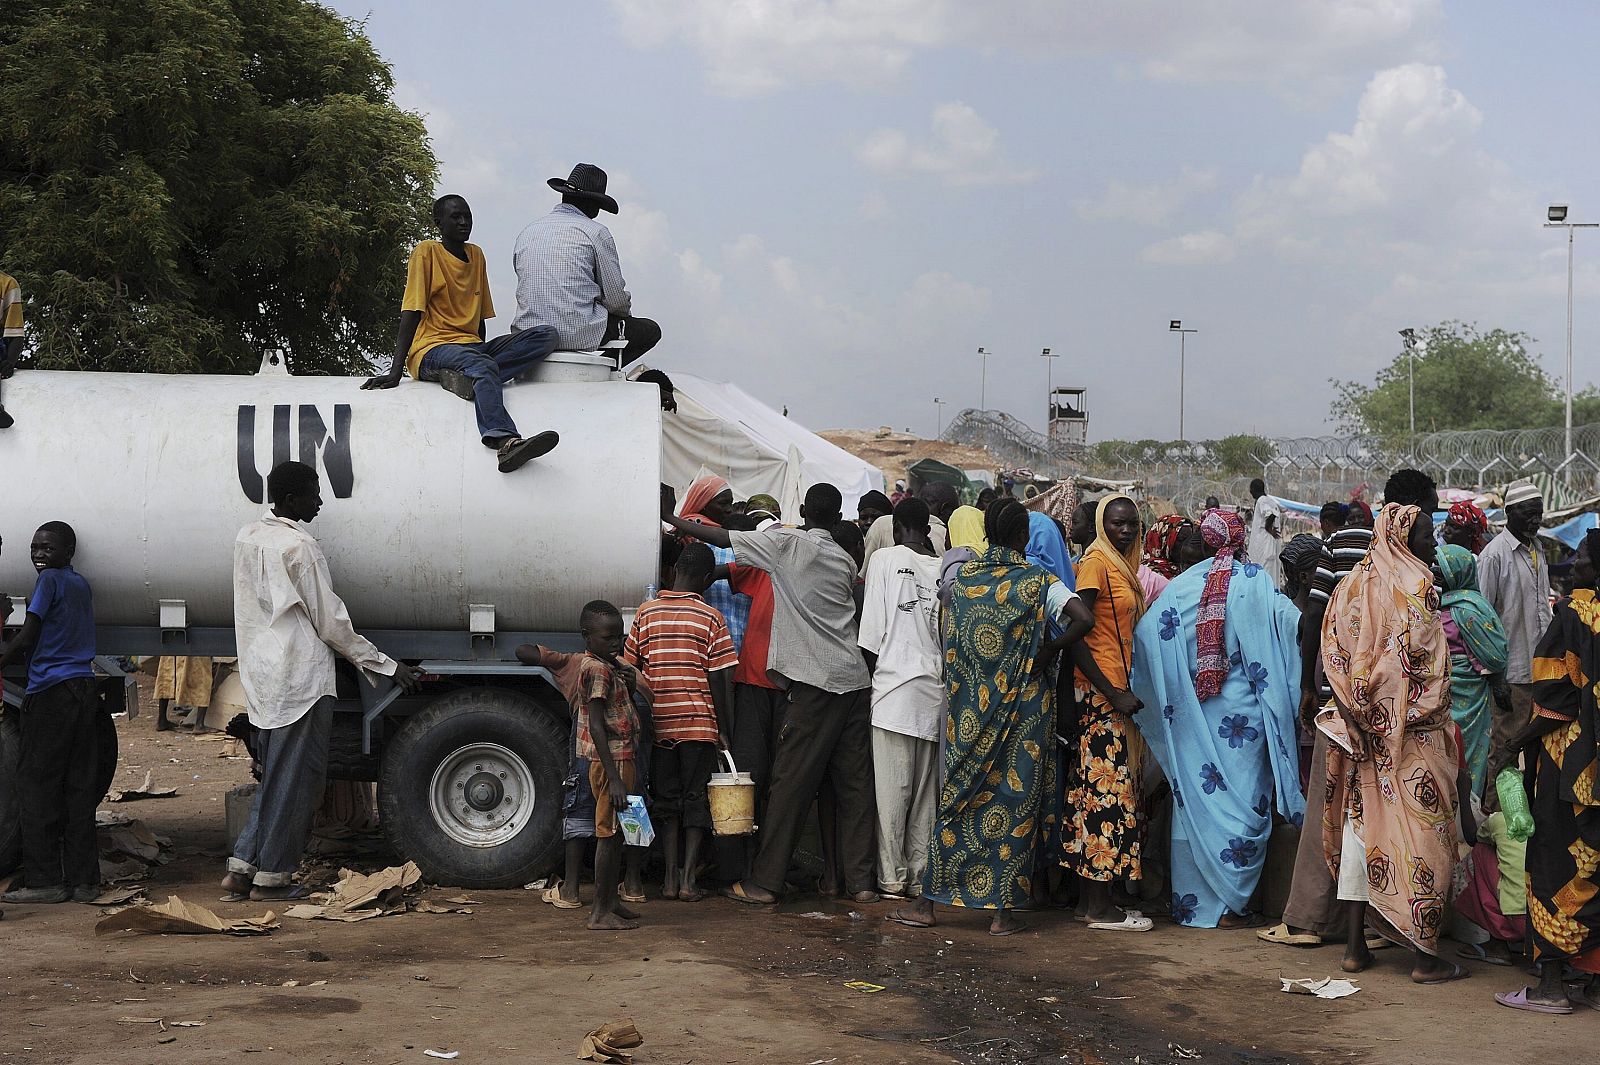 Imagen facilidada por la misión de la ONU en Sudán (UNMIS) el pasado 10 de junio